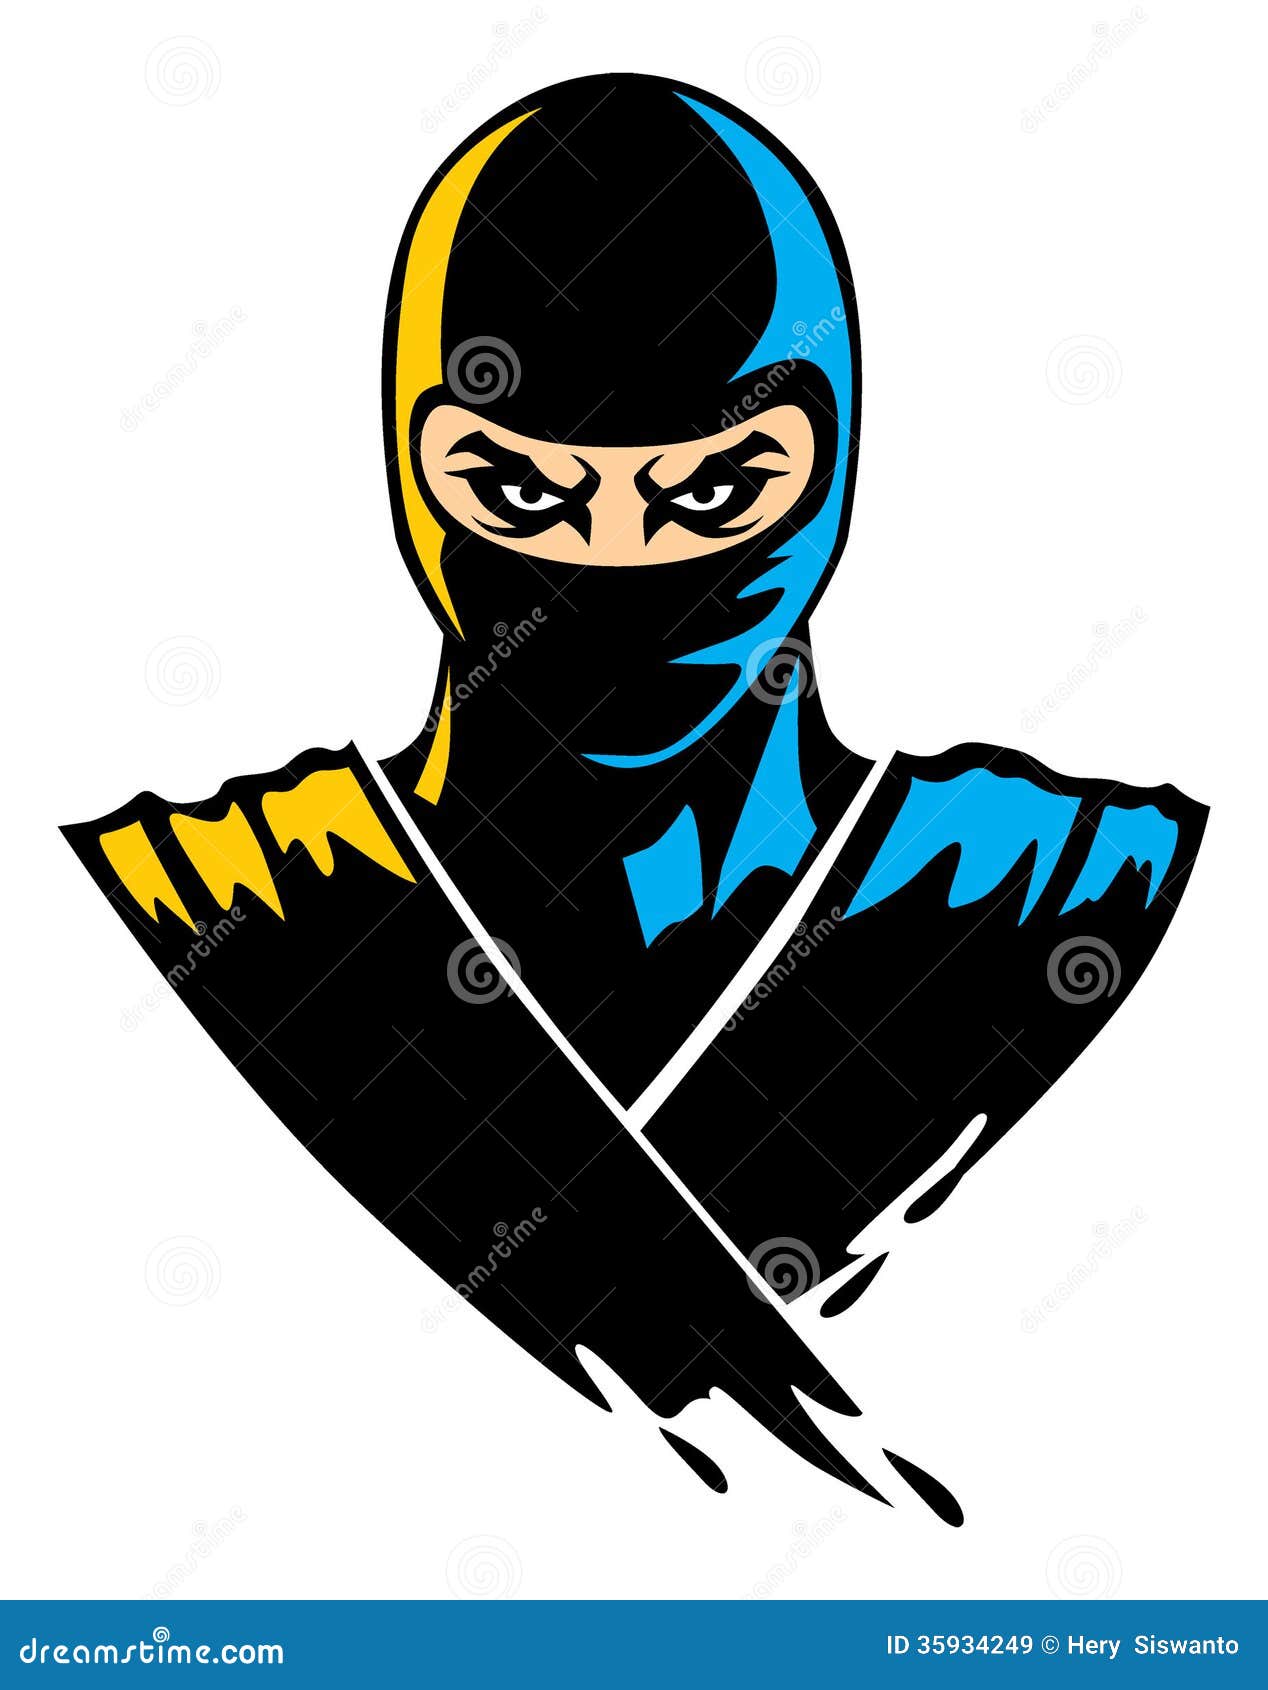 Vetor de mascote ninja de corpo inteiro para projetos online